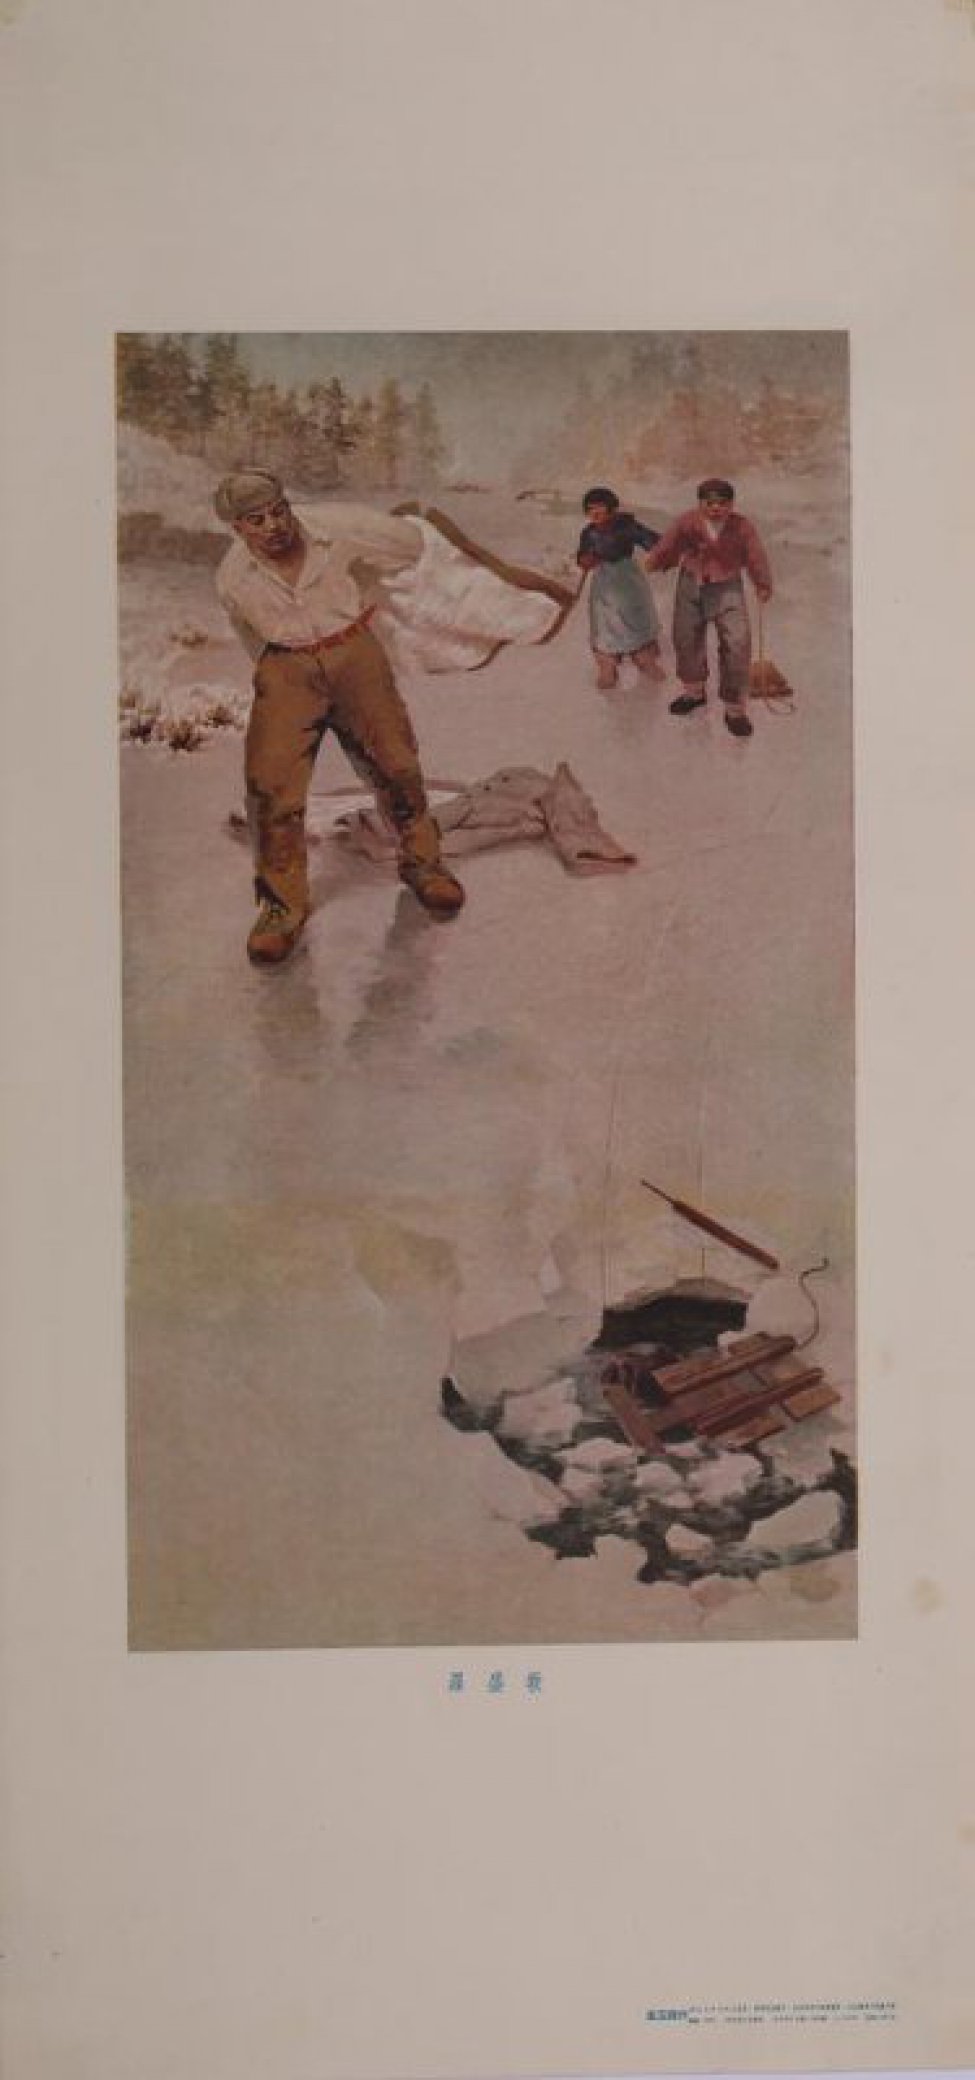 Изображен на льду реки боец-китаец. Он на ходу снимает куртку и направляется к проруби, в которой виднеется голова и сани. За ним мальчик и девочка с санями. Вдали лес.